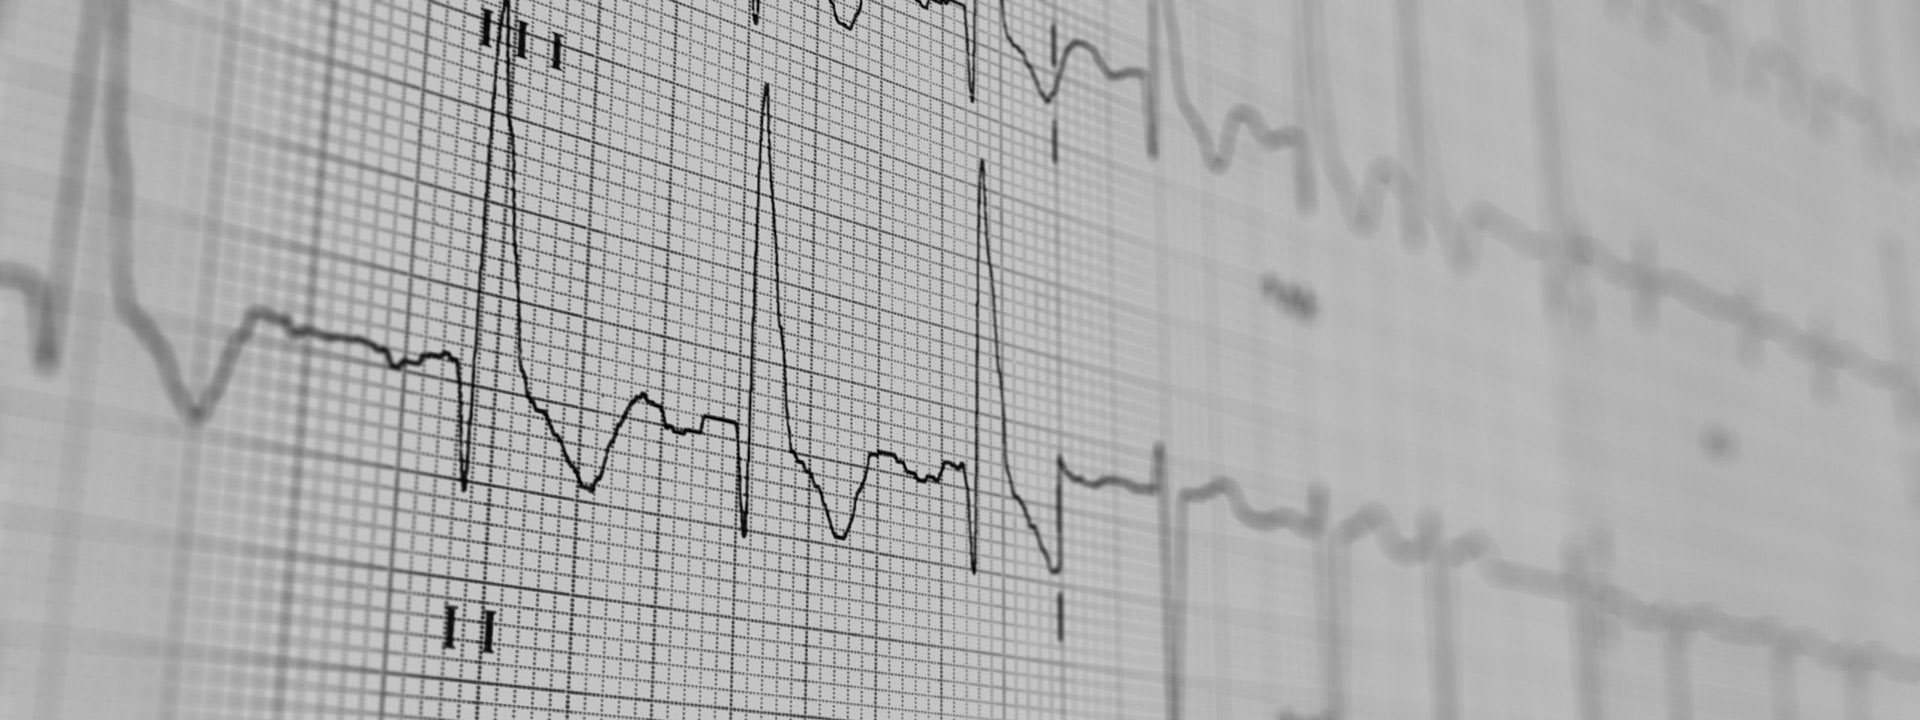 Tragbares EKG-Gerät im Scheckkartenformat zur Aufzeichnung von Herzrhythmusstörungen.